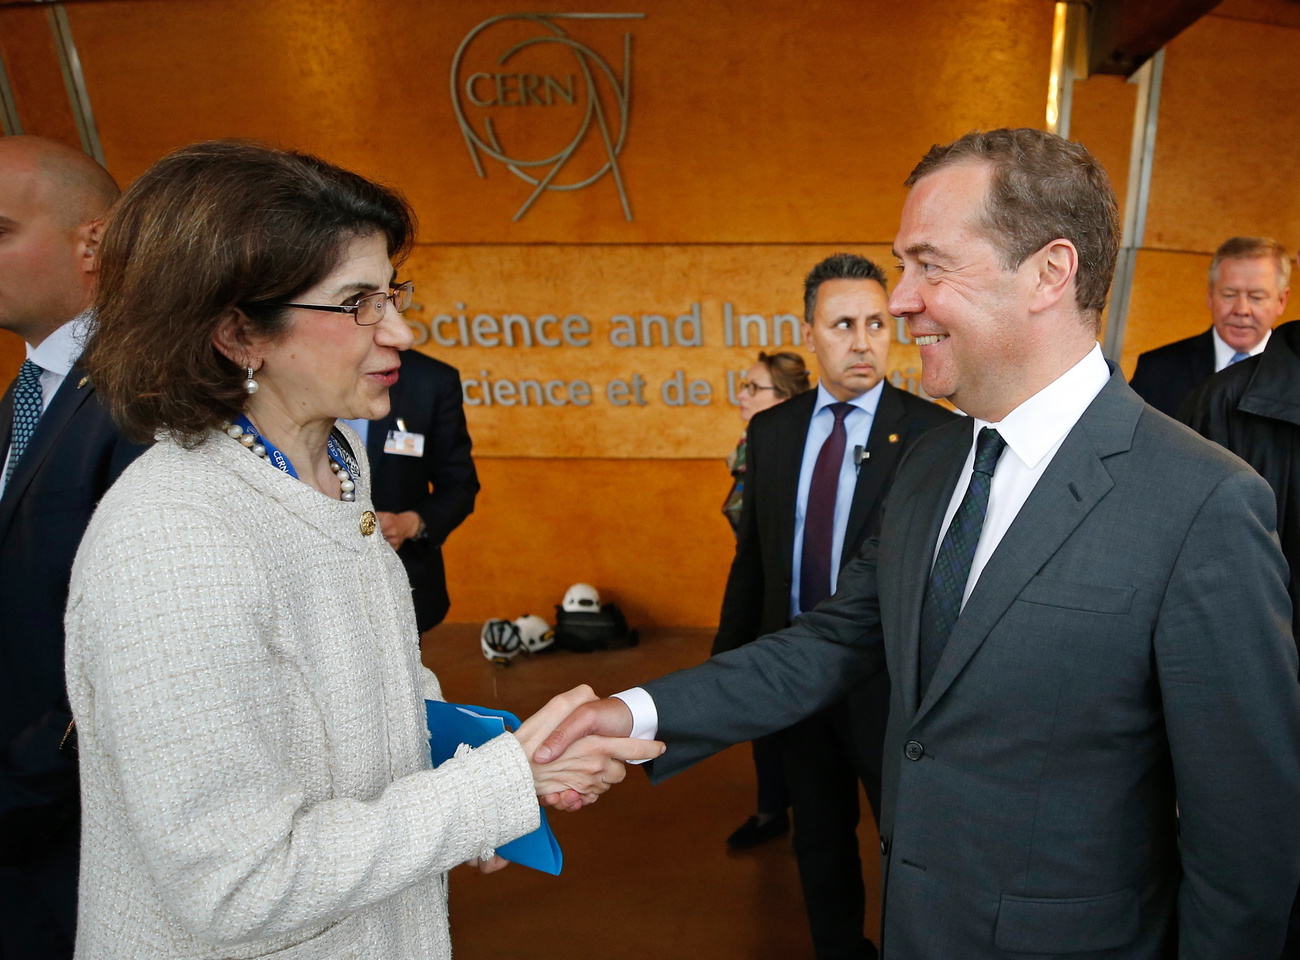 Тогдашний премьер-министр России Дмитрий Медведев и генеральный директор ЦЕРН (Европейского совета по ядерным исследованиям) Фабиола Джанотти в Женеве, Швейцария, 10 июня 2019 г.